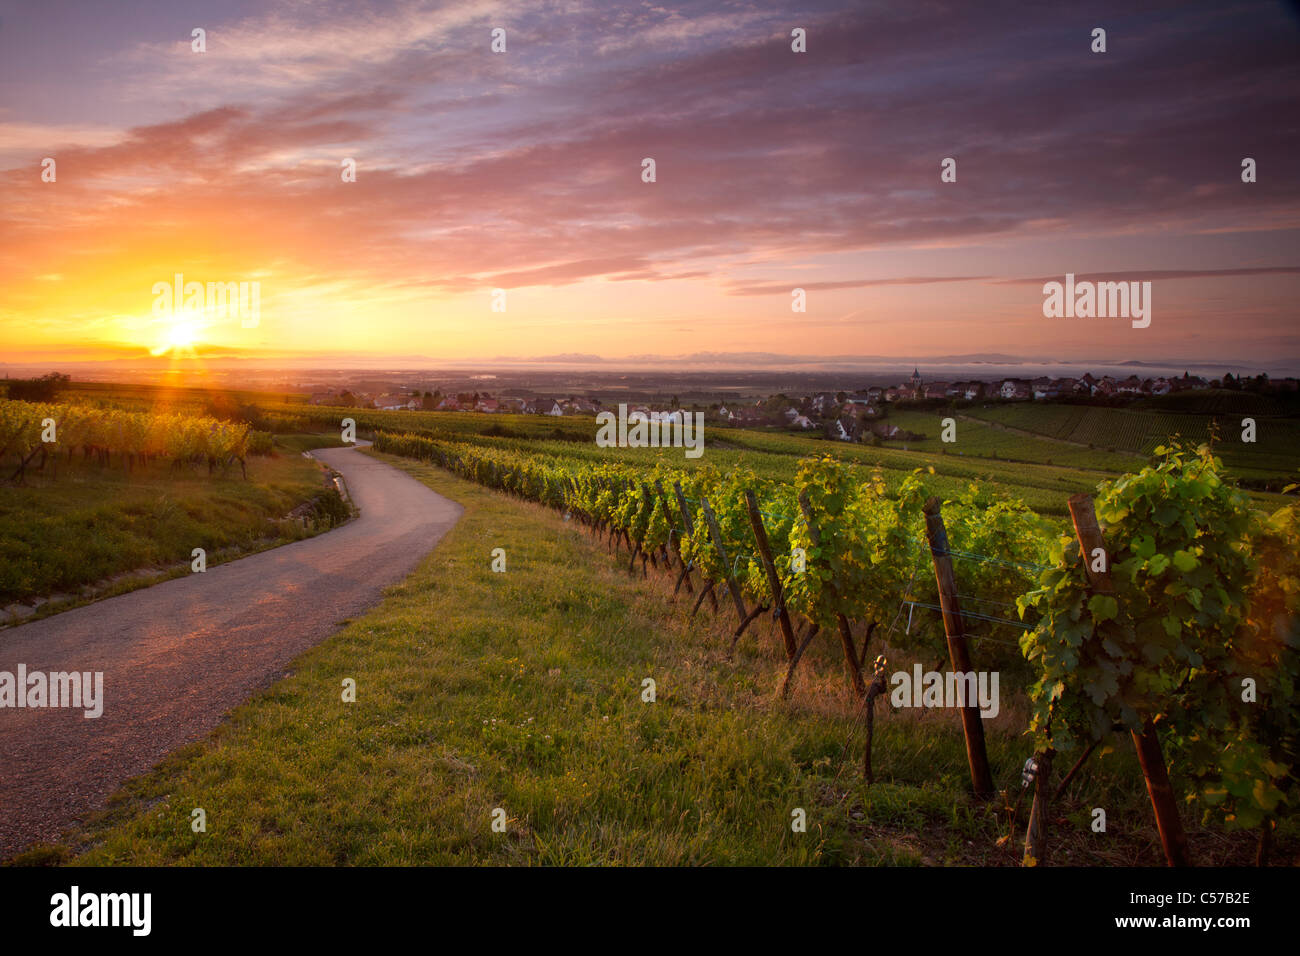 Sunrise over vineyards along the famous Route des Vins near Zellenberg, Alsace France Stock Photo